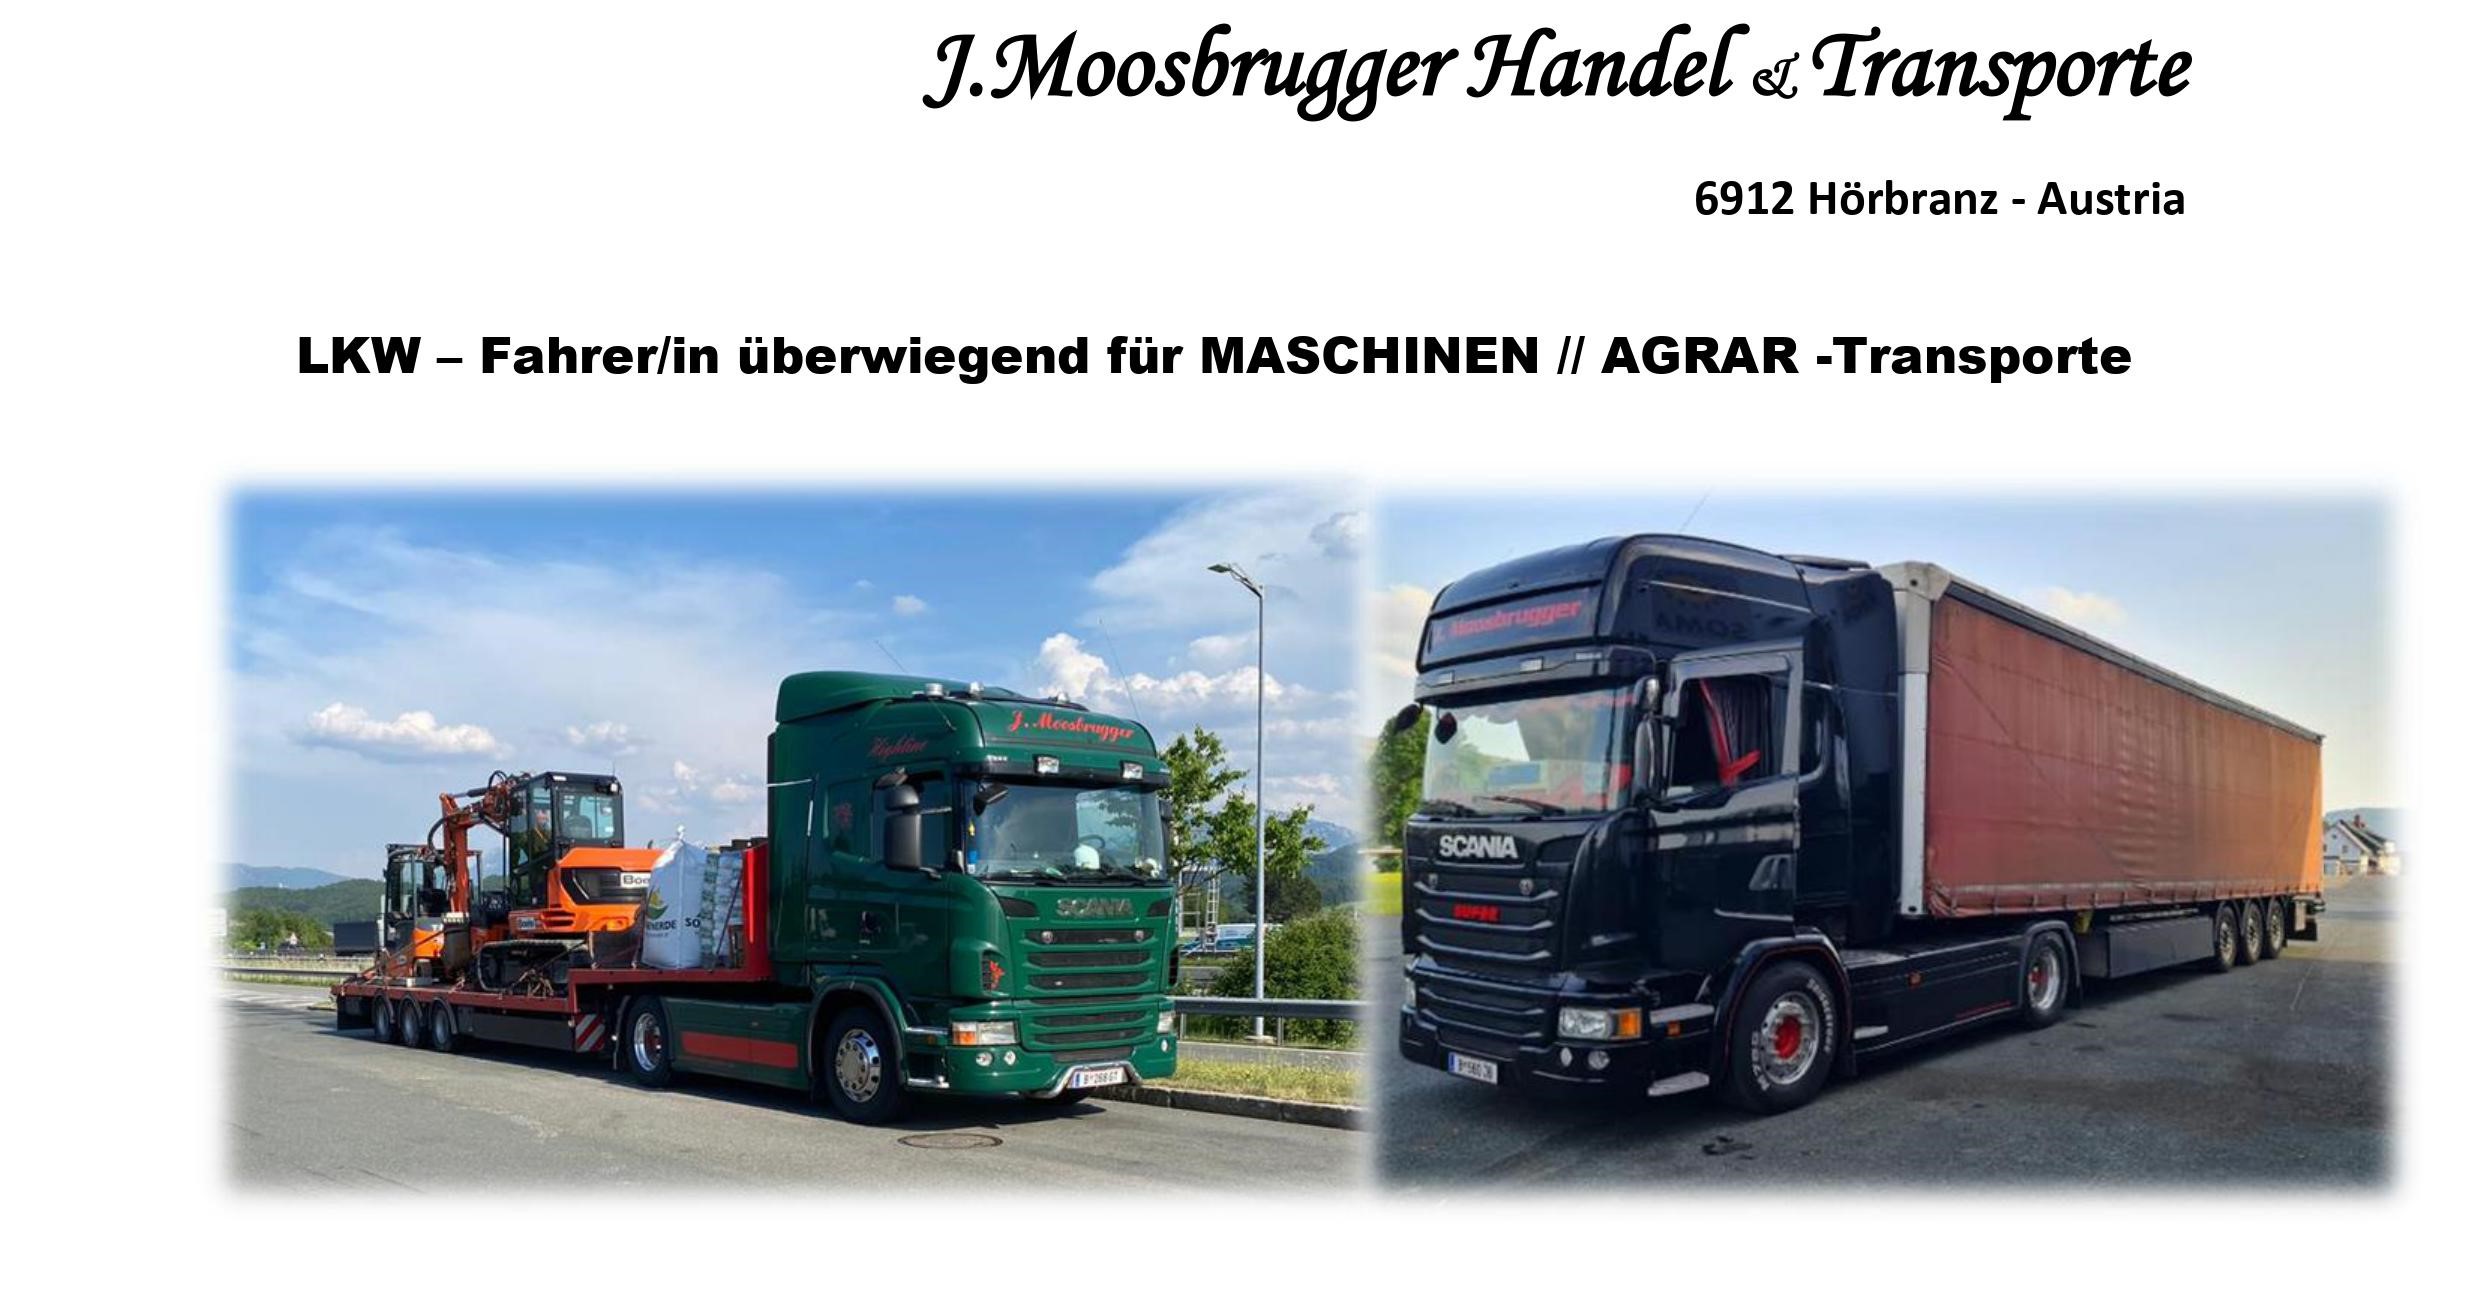 LKW Fahrer/in MASCHINEN AGRAR Transporte